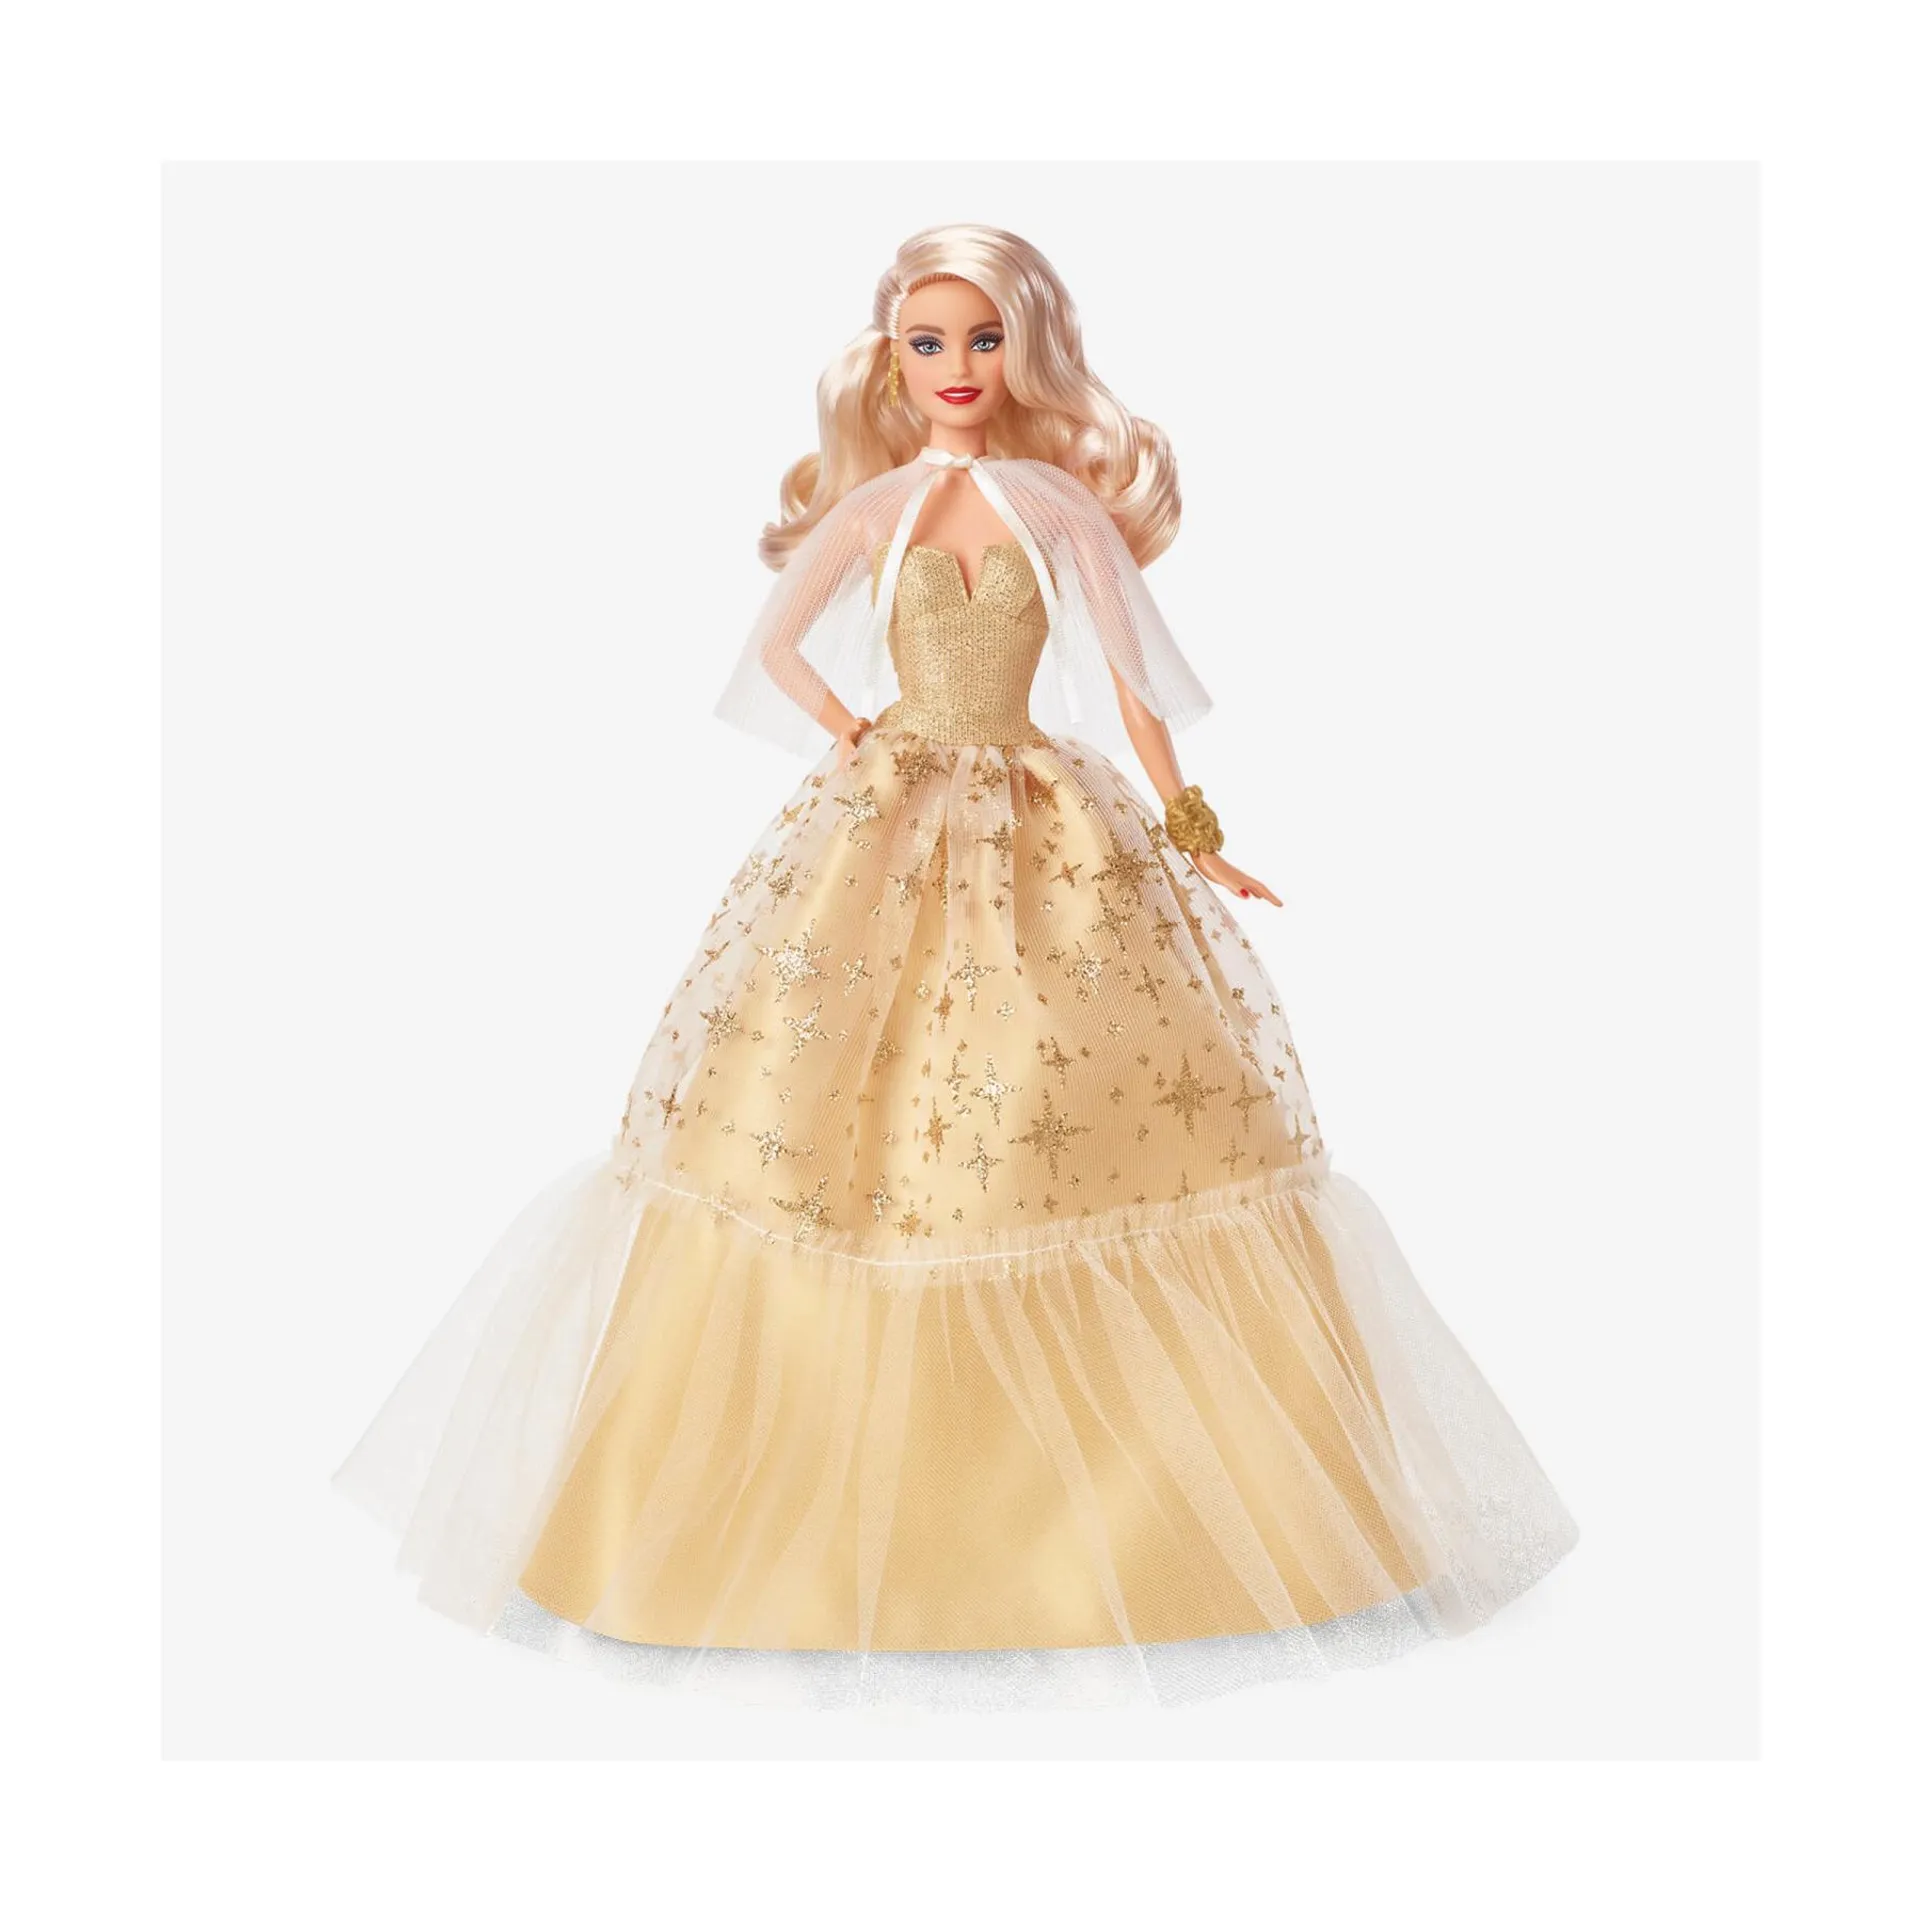 Barbie signature – magia delle feste 2023, bambola da collezione con capelli biondi e abito dorato, confezione da esporre, regalo per le feste, 6+ anni, hjx04